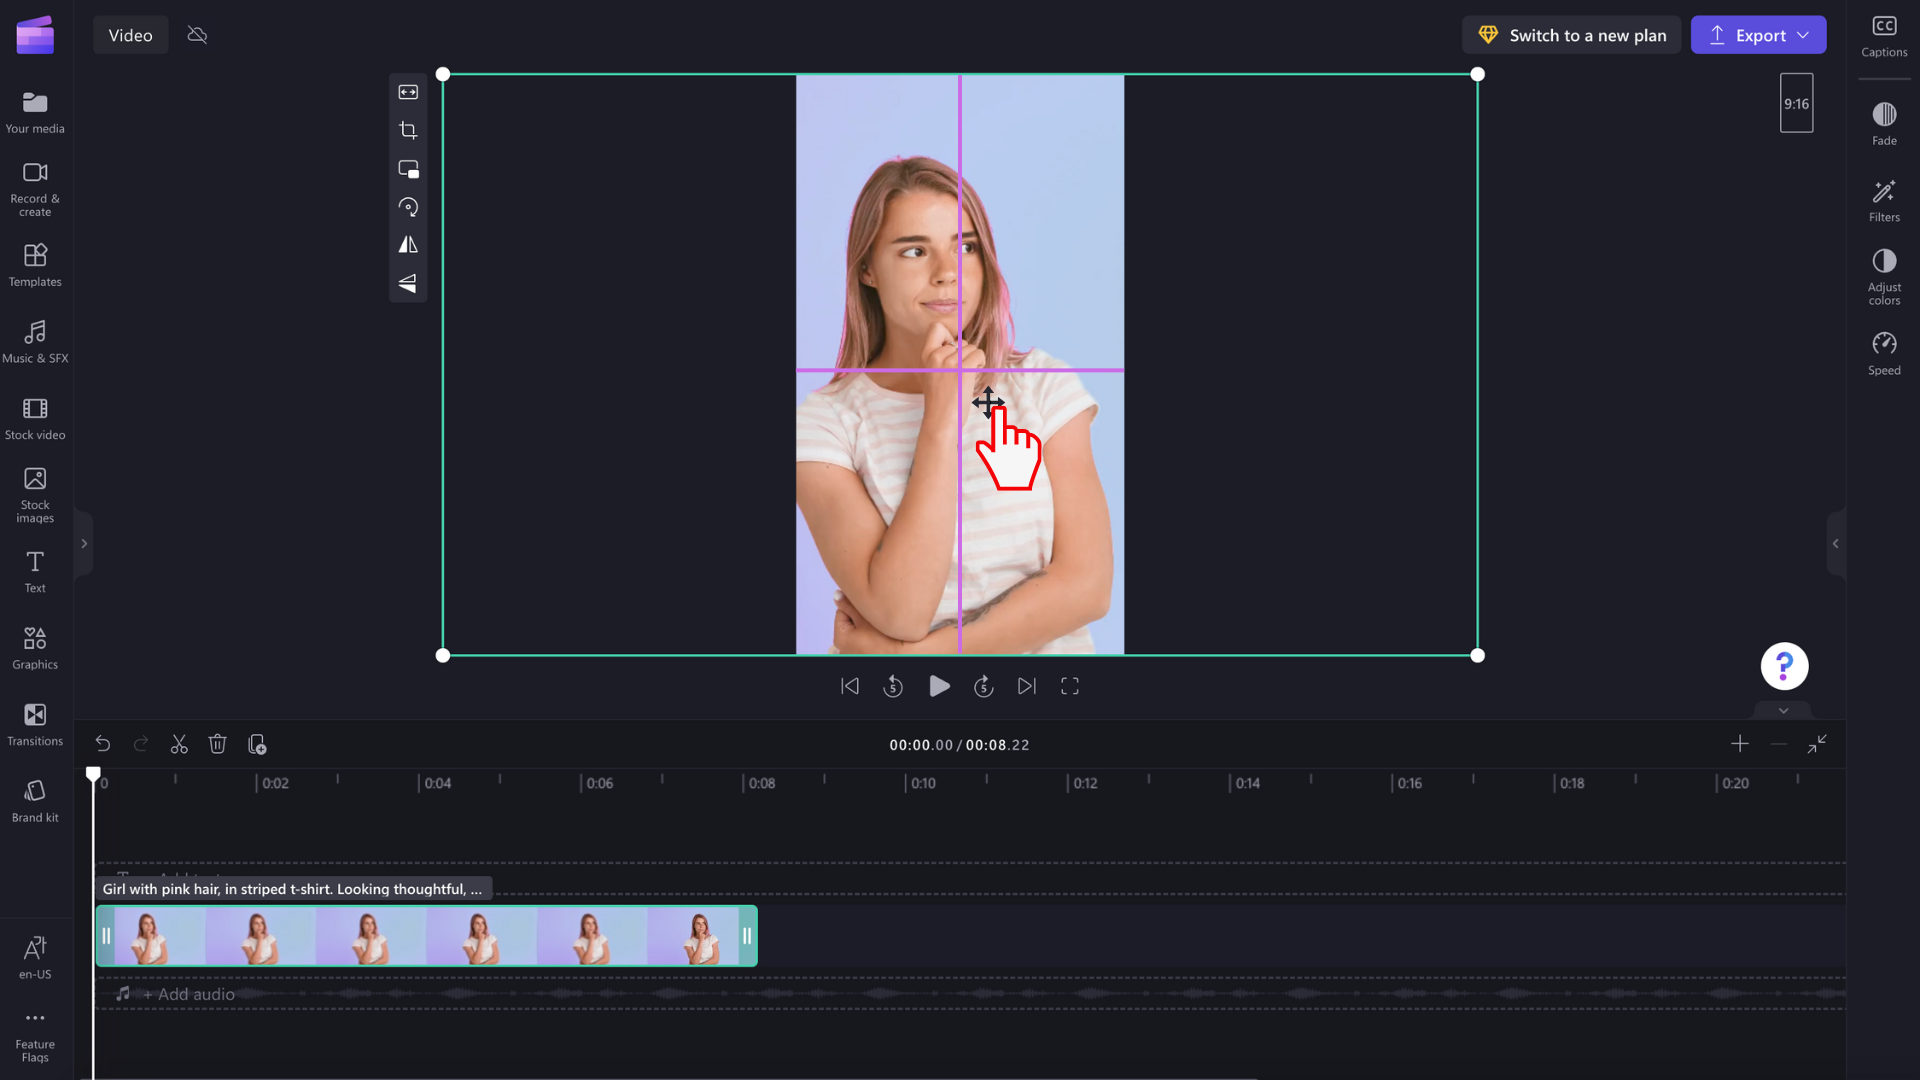 O imagine cu un utilizator repoziționând previzualizarea video plină.